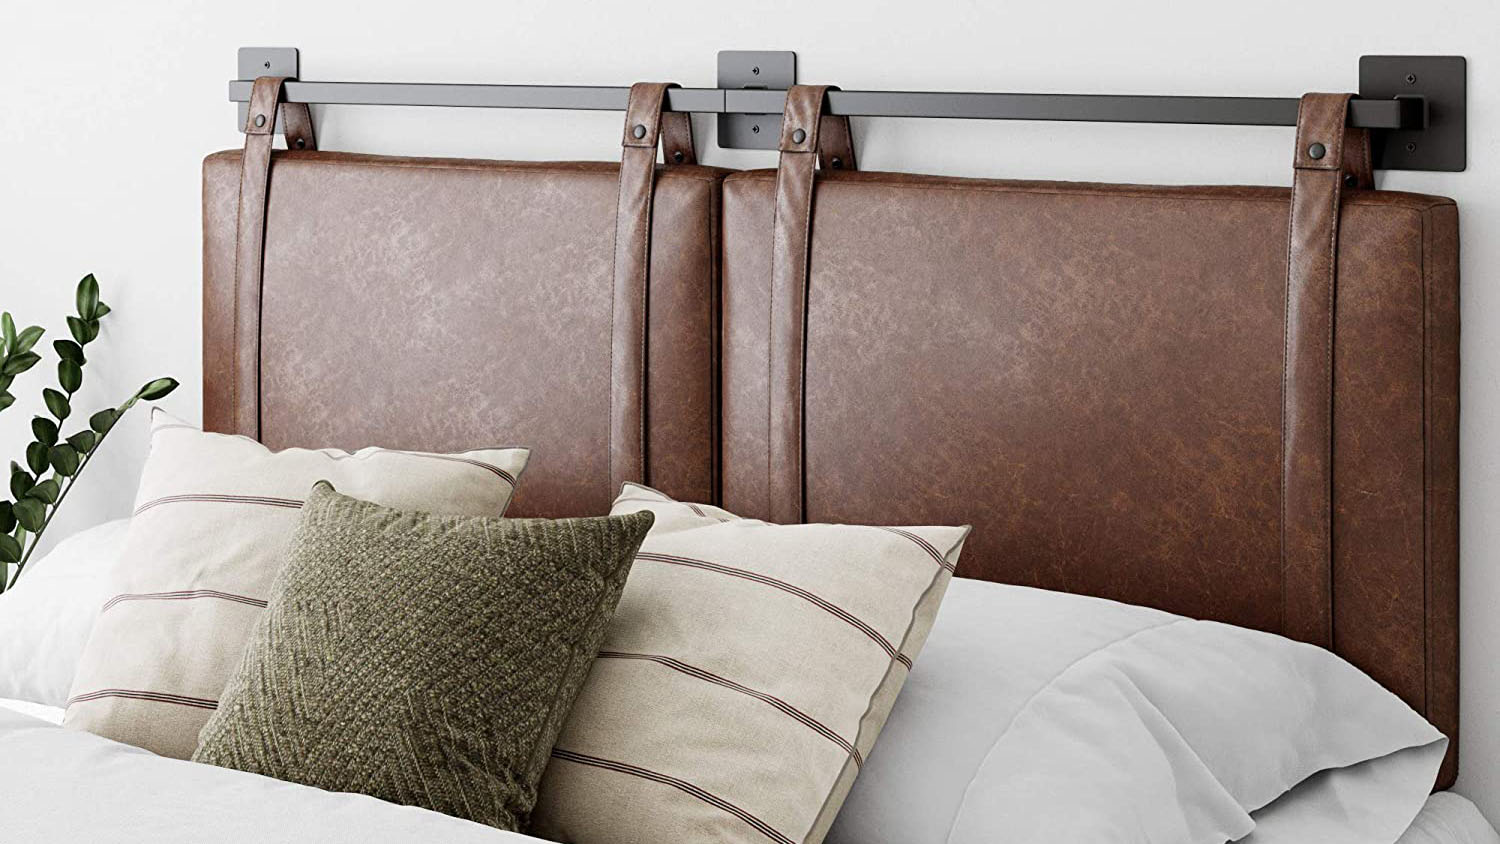 15 Best Headboards For Adjustable Beds, Headboard For Queen Tempurpedic Adjustable Bed